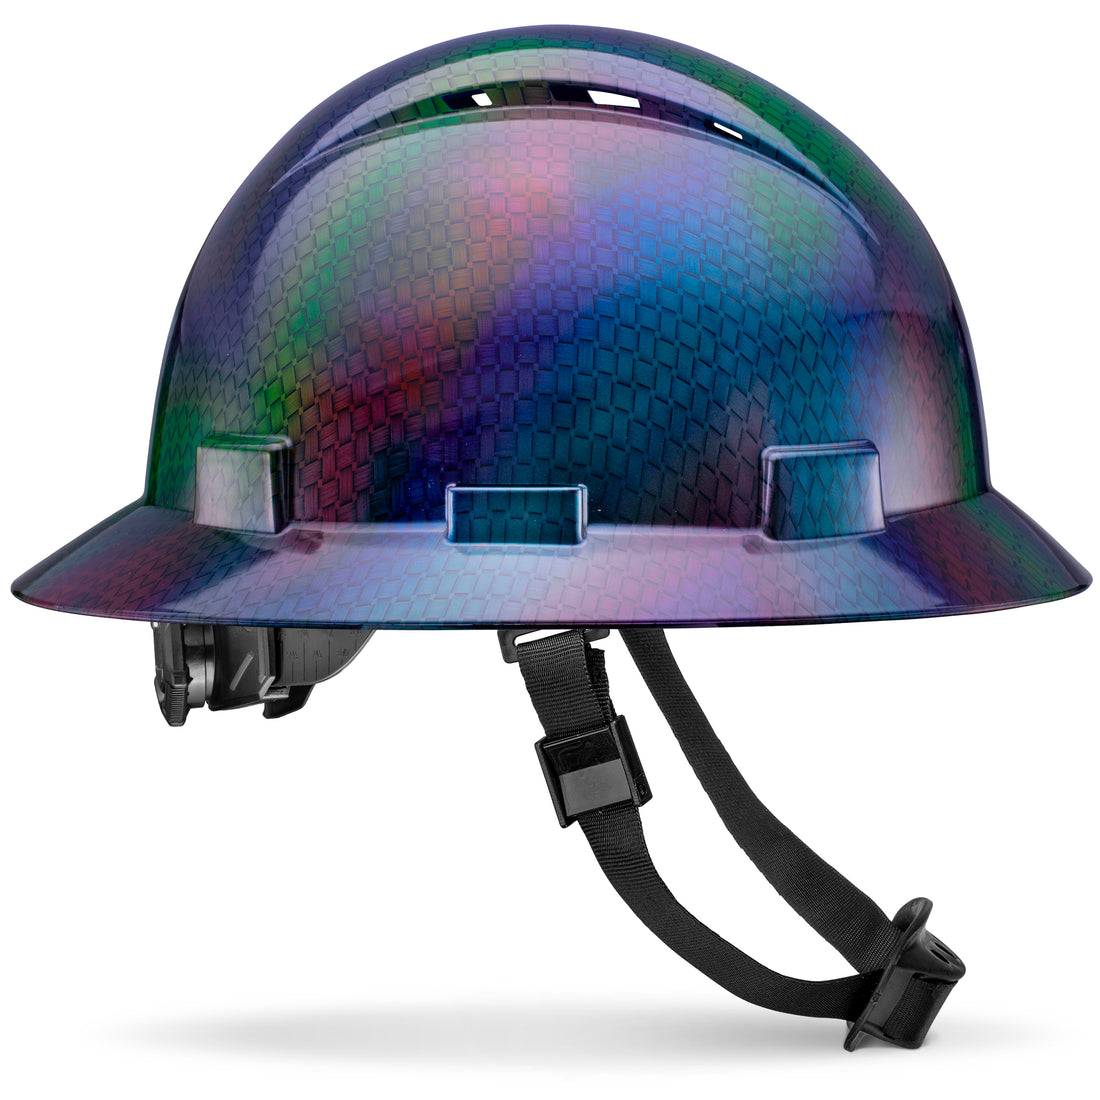 Full Brim Chameleon Carbon Fiber Design Gloss Finish Vented Hard Hat